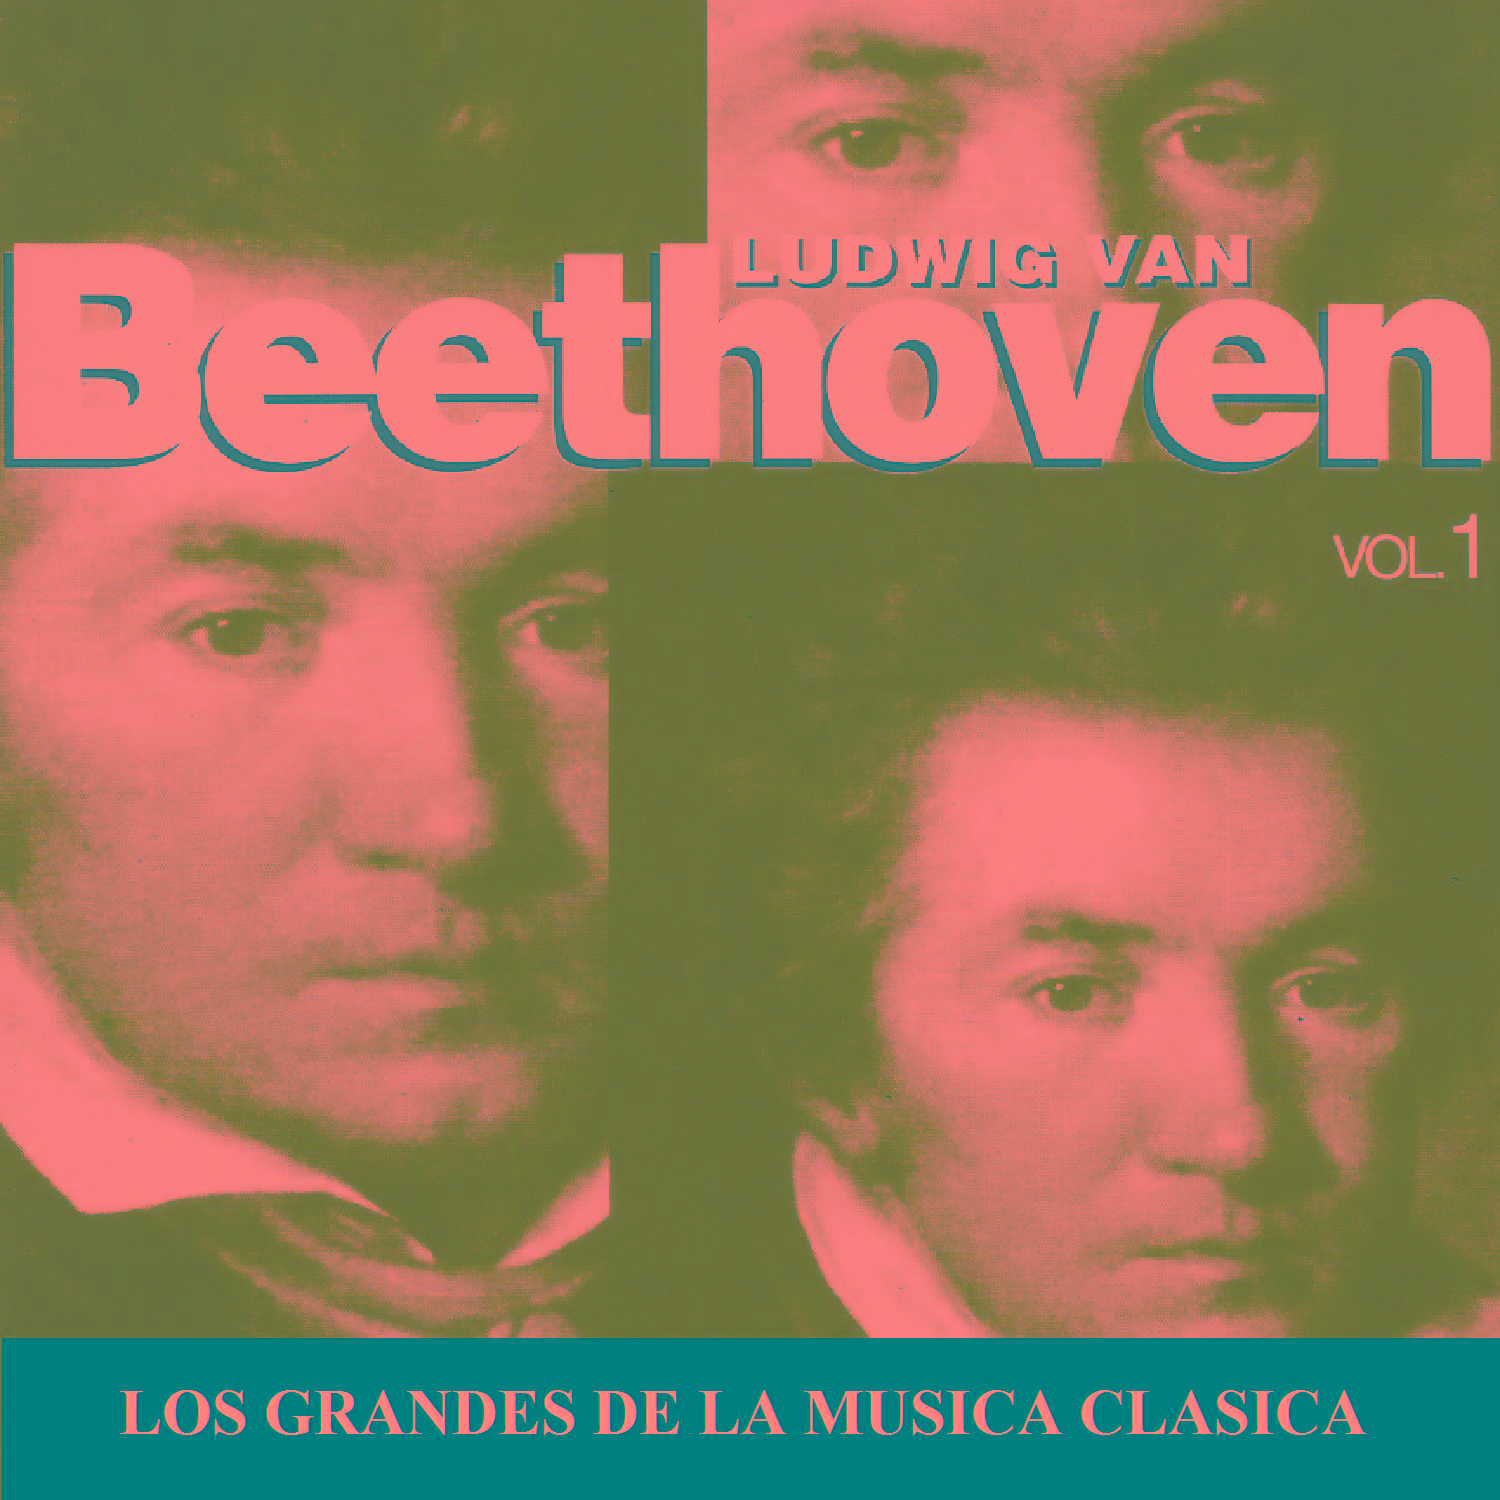 Los Grandes de la Musica Clasica - Ludwig van Beethoven Vol. 1